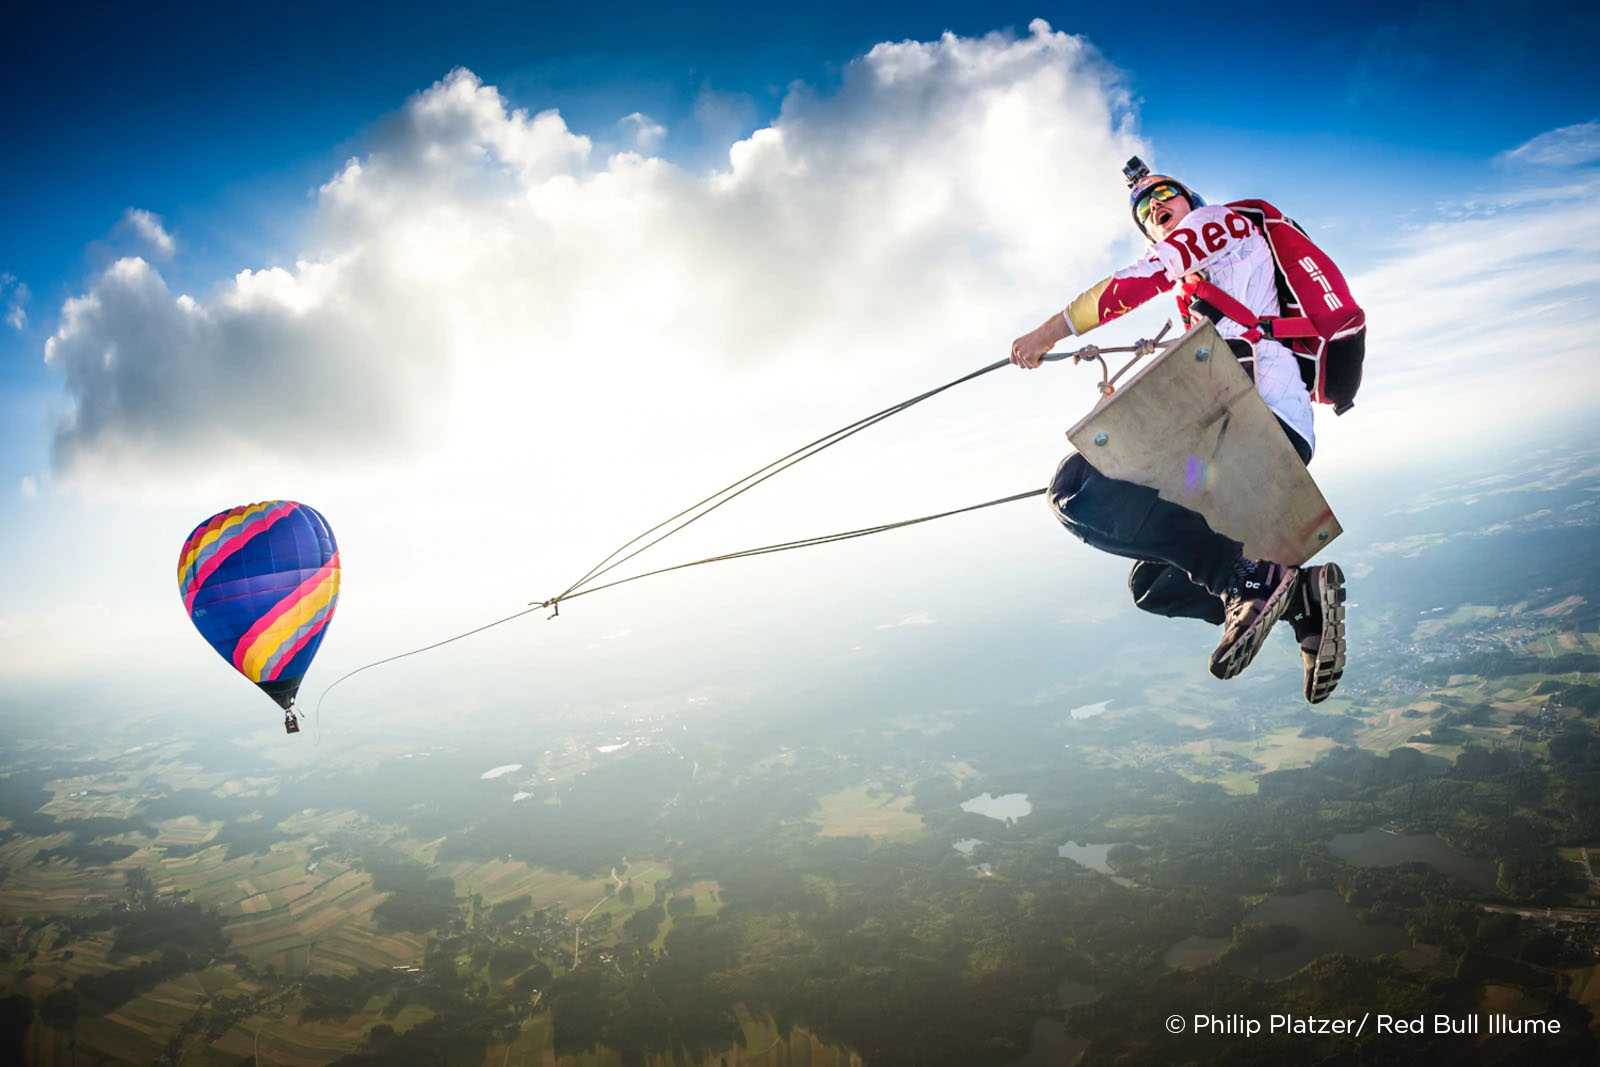 El mayor concurso de imágenes de deportes de aventura y acción del mundo, Red Bull Illume regresa en 2021 junto a Lenovo